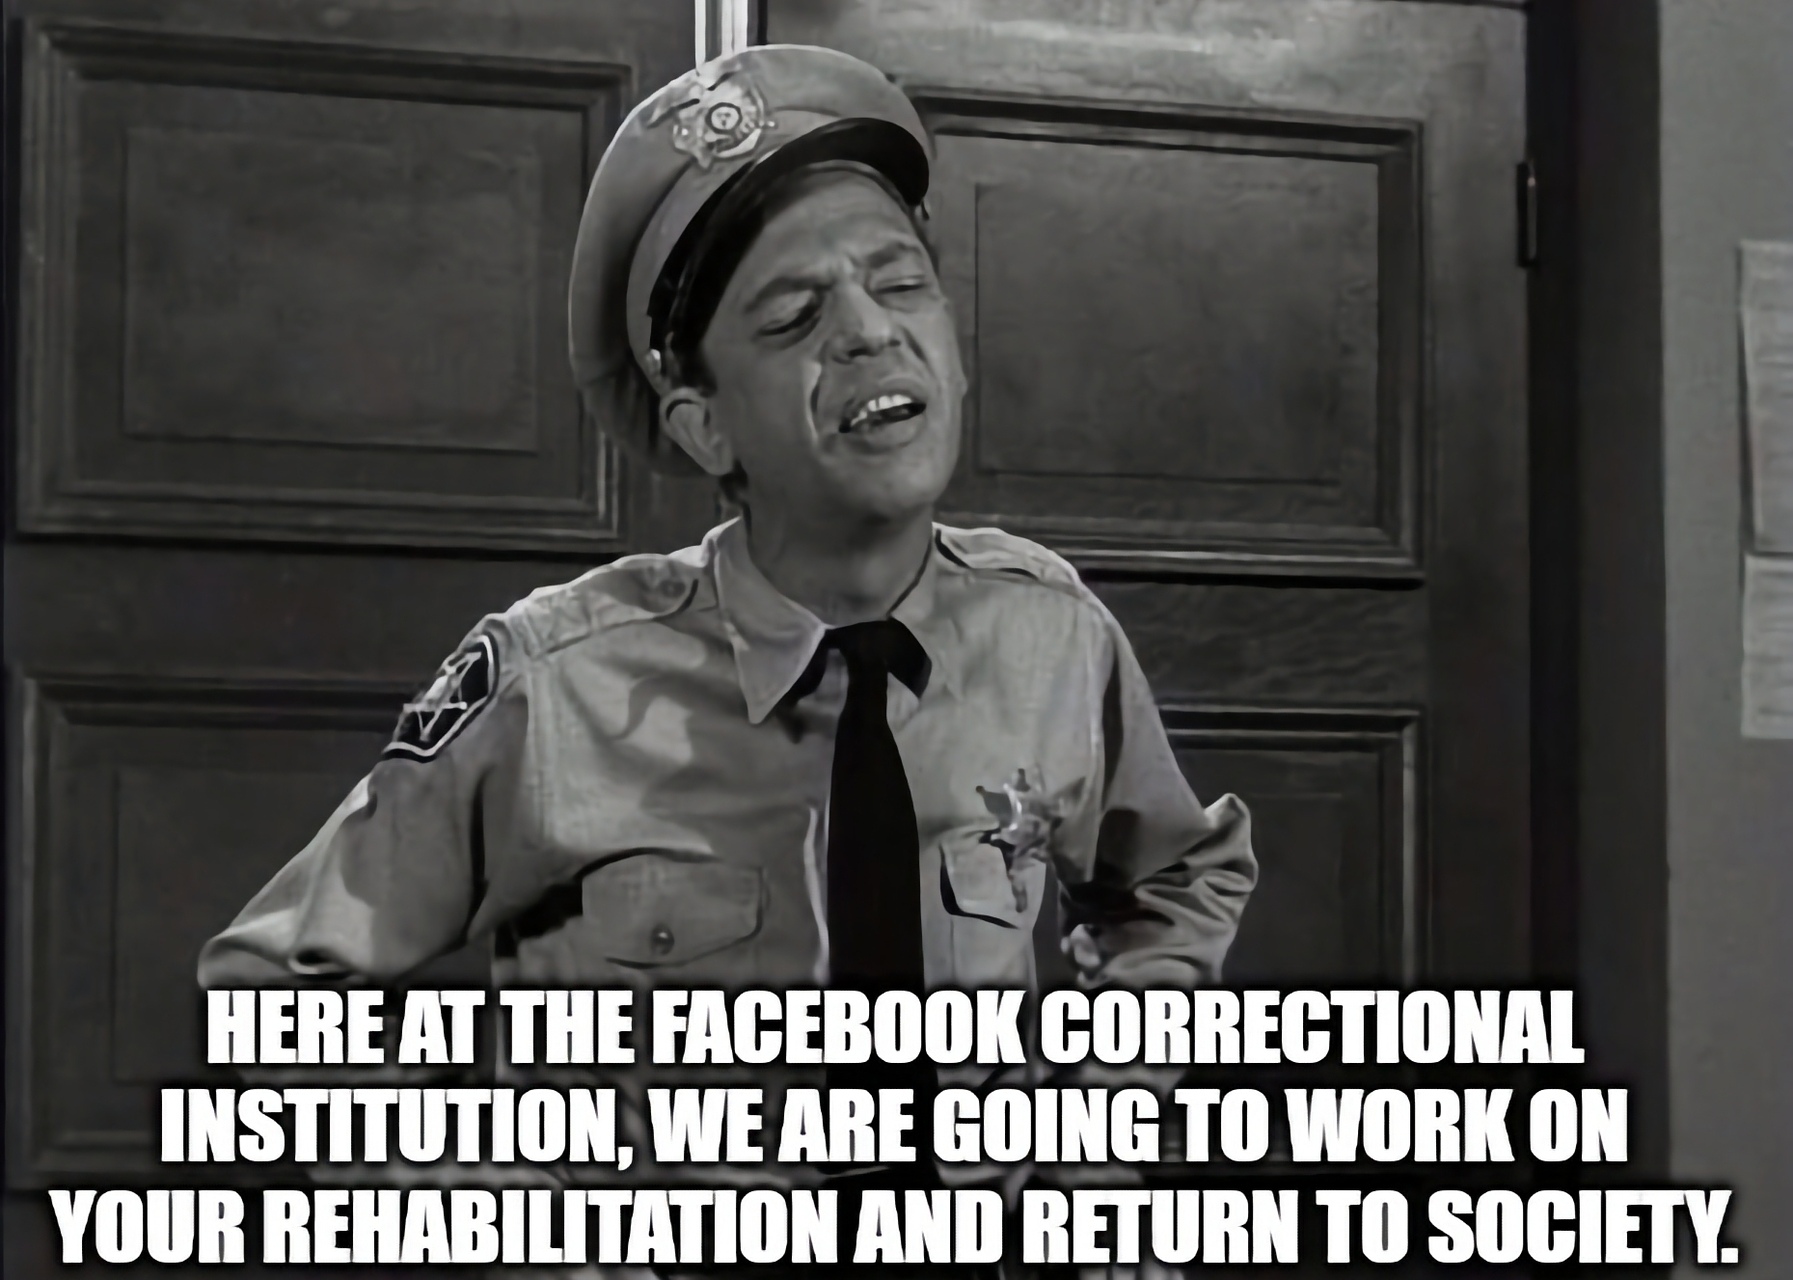 Facebook: «мем» (т. е. сатирический мультфильм в Интернете), вдохновленный политикой модерации Facebook, признан весьма сомнительным (Изображение: imgflip.com)